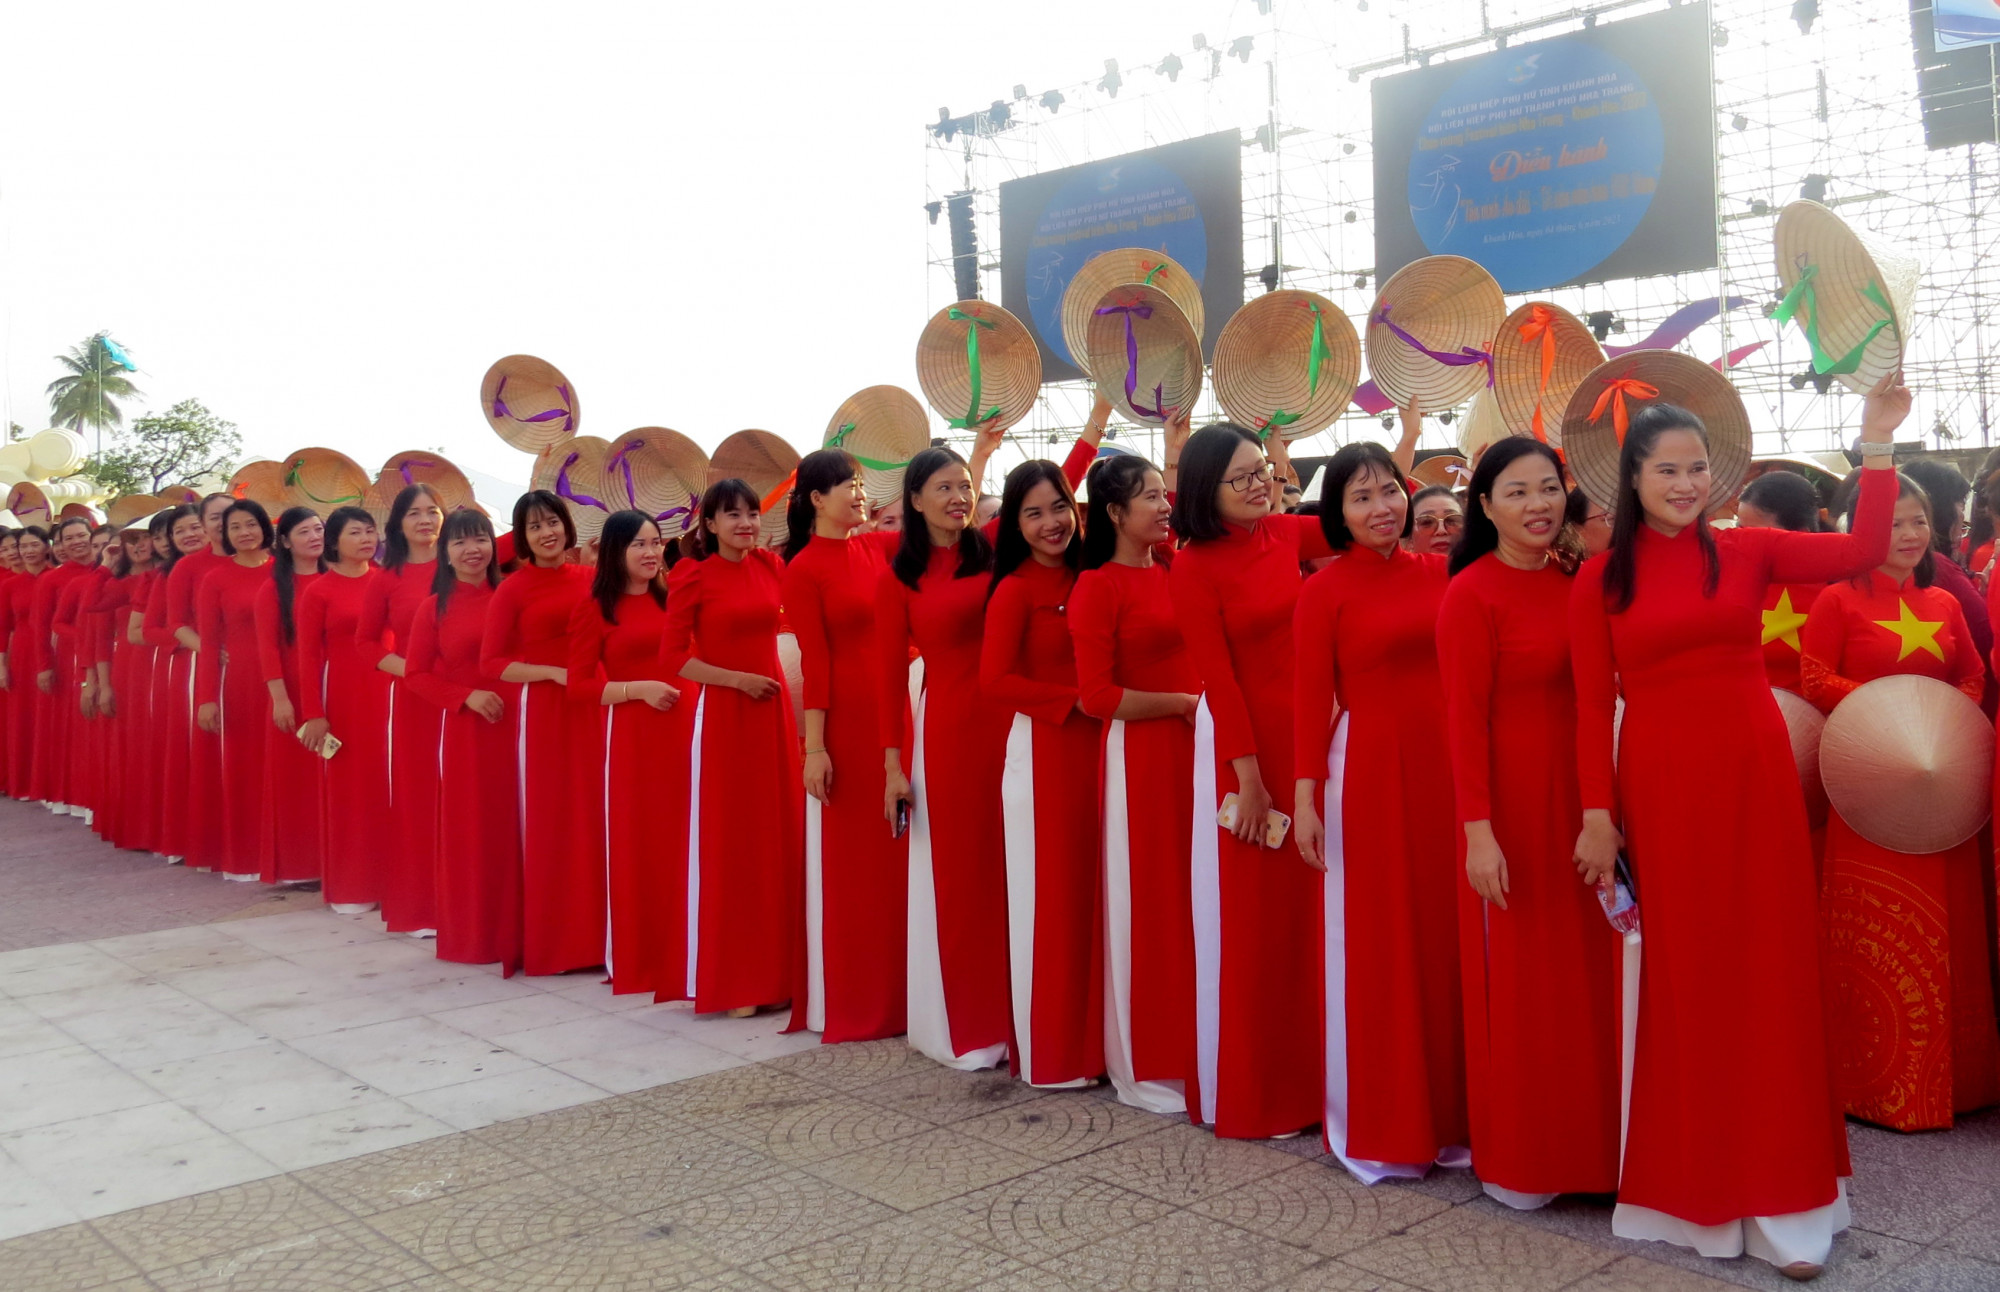 áo dài truyền thống của người Việt là thương hiệu độc đáo, ấn tượng, là “chiếc áo nhiệm màu” góp phần quan trọng cho các hoạt động quảng bá hình ảnh Việt Nam ra thế giới